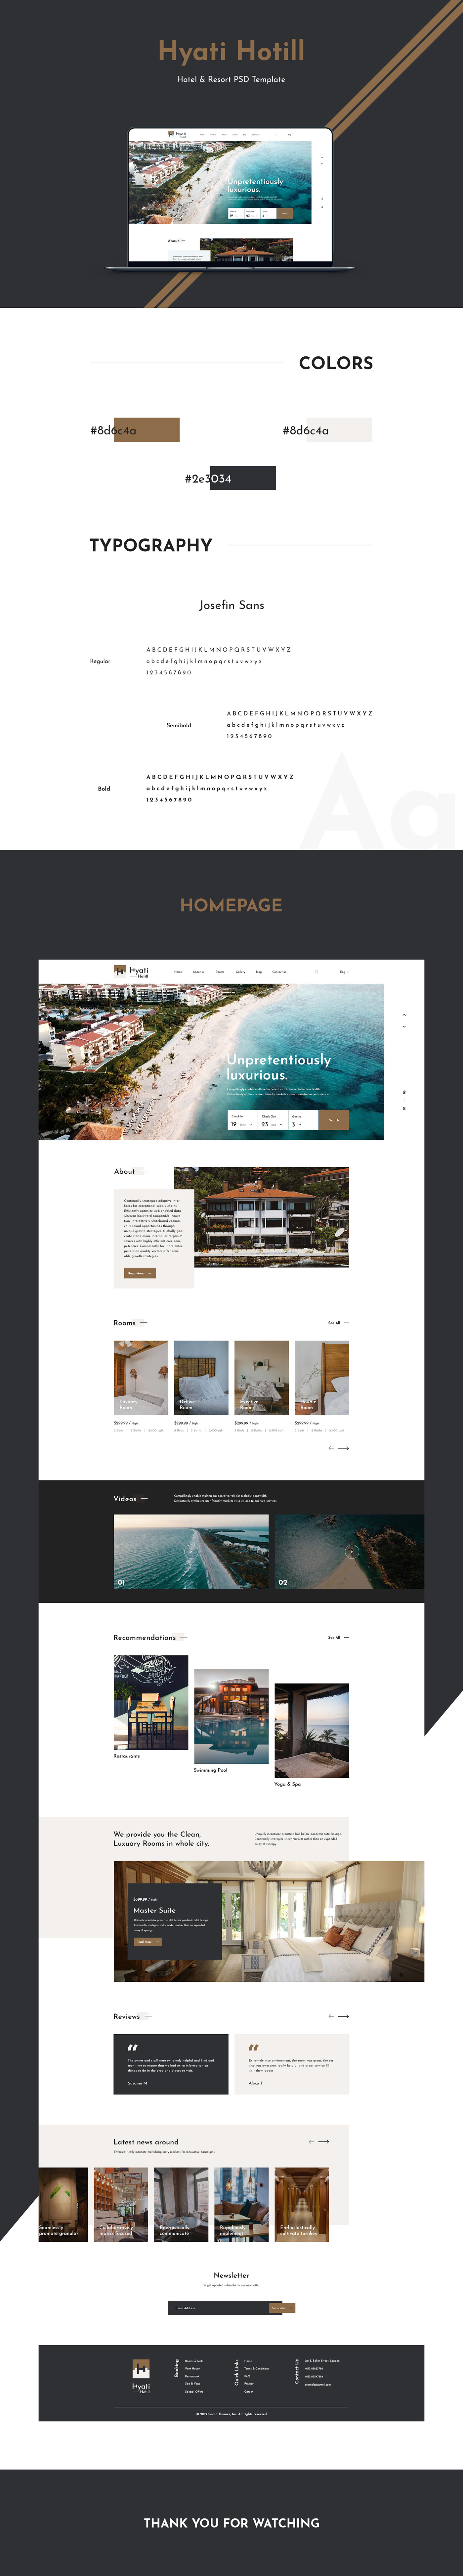 bed&breakfast hotel resort creative Webdesign clean adobeawards UI UI/UX